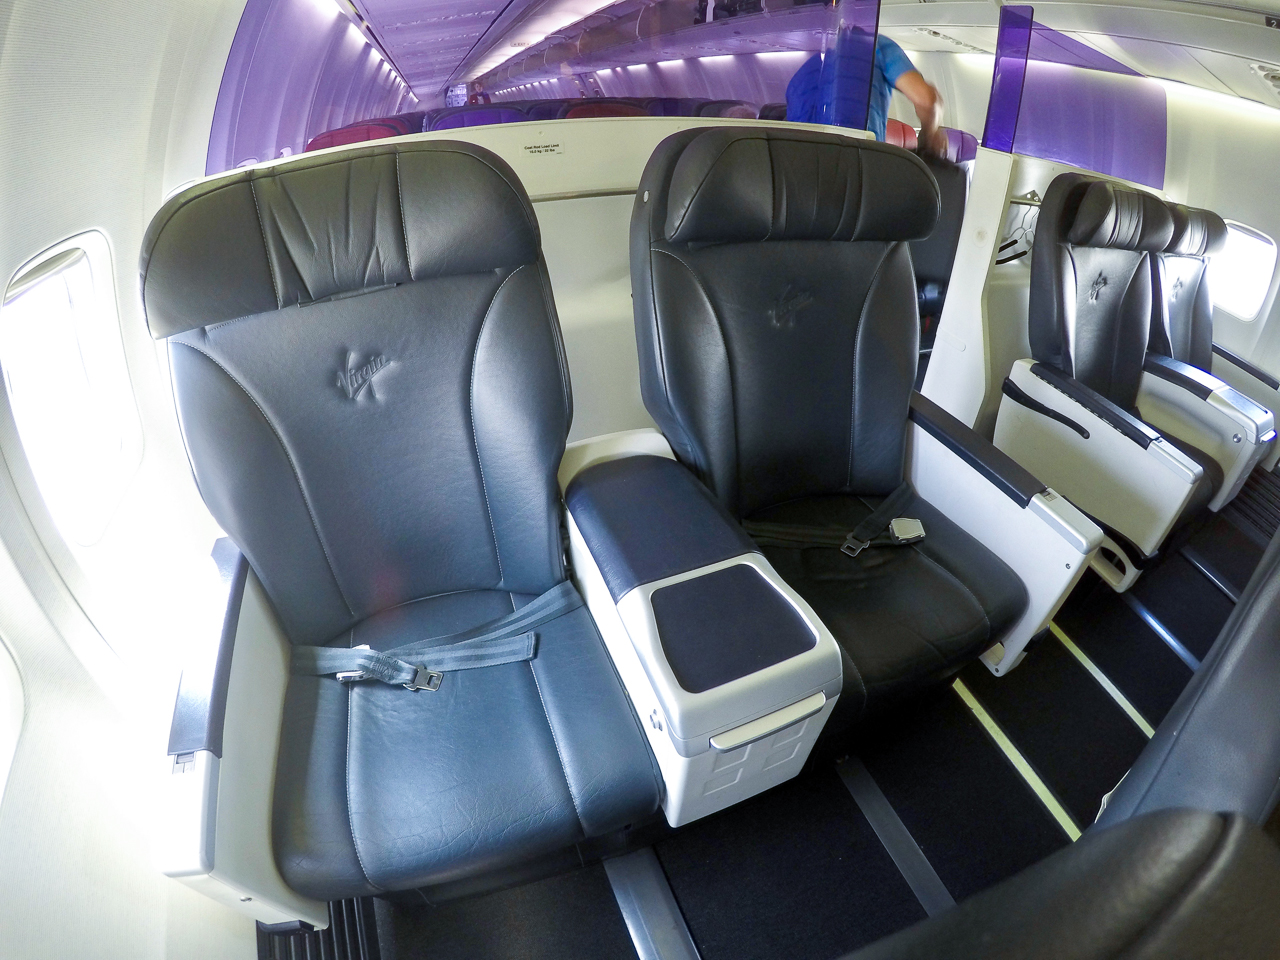 Virgin Australia 737 Business Class